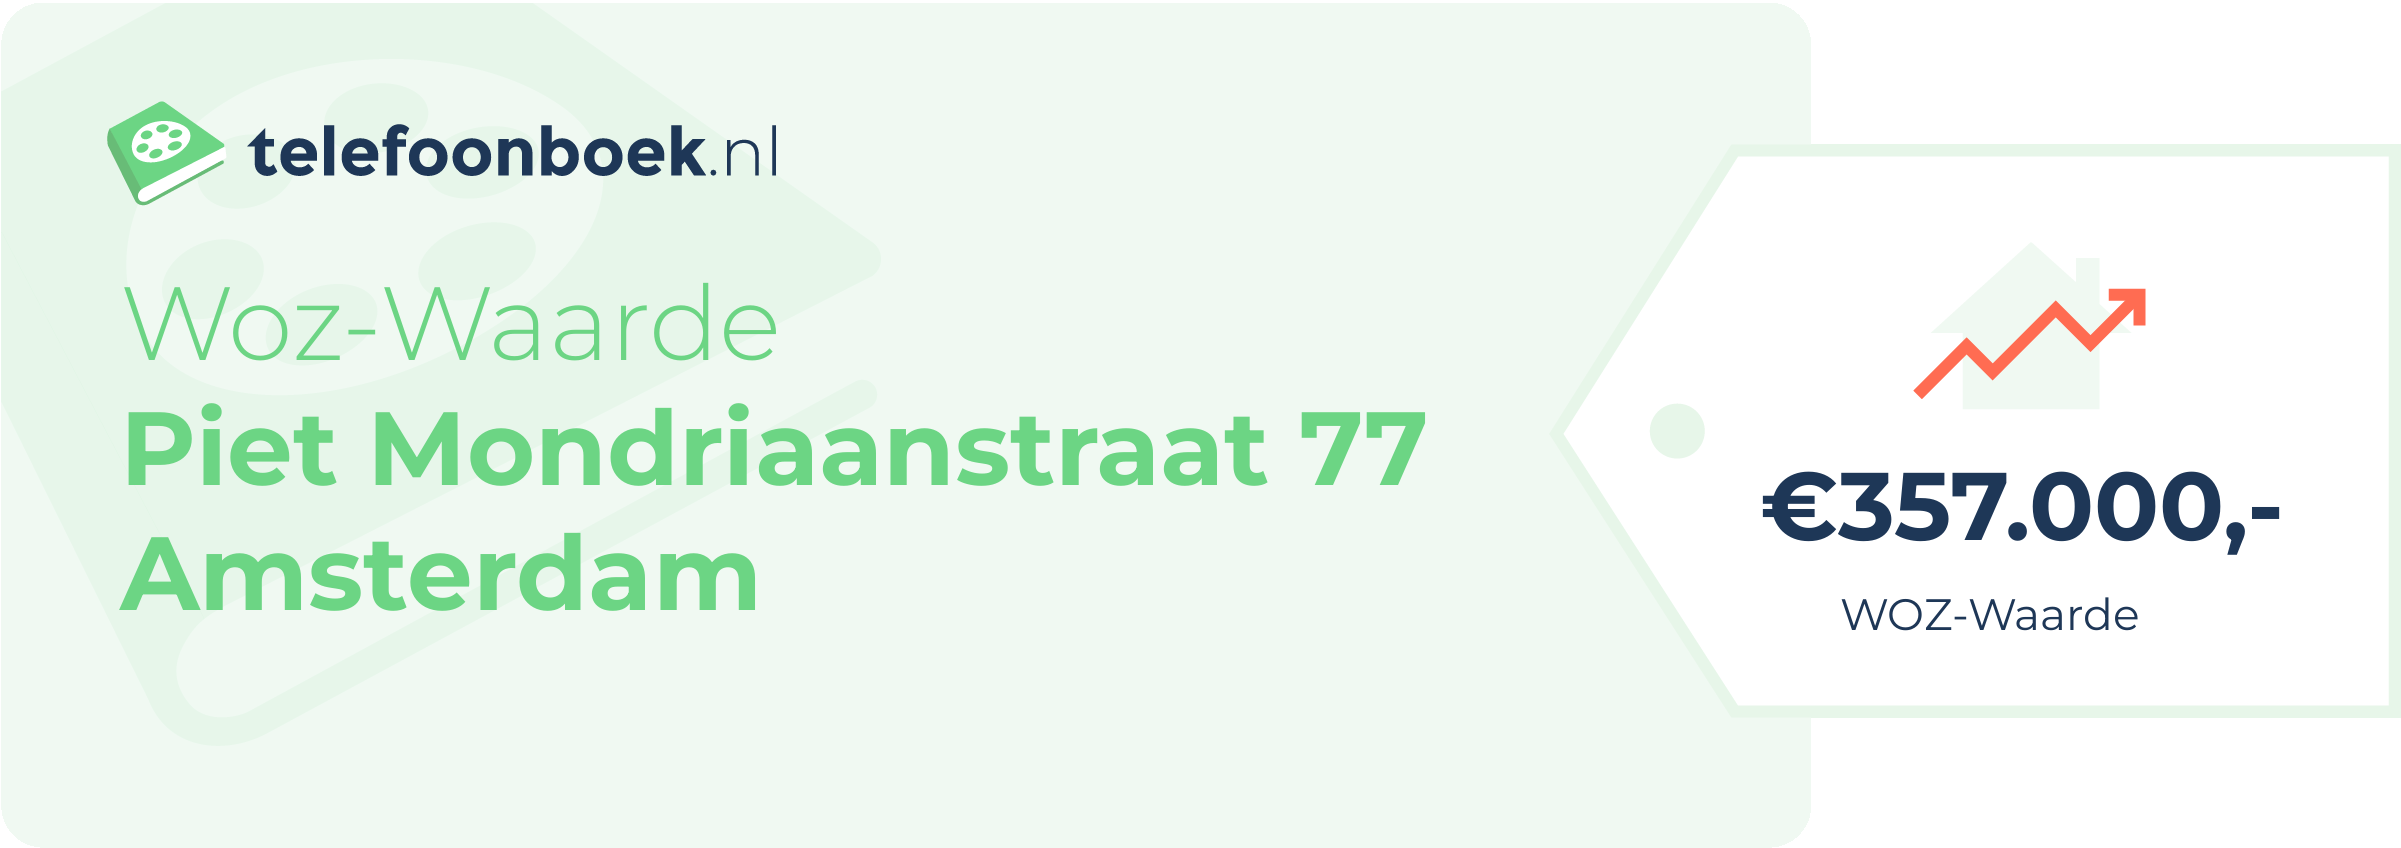 WOZ-waarde Piet Mondriaanstraat 77 Amsterdam